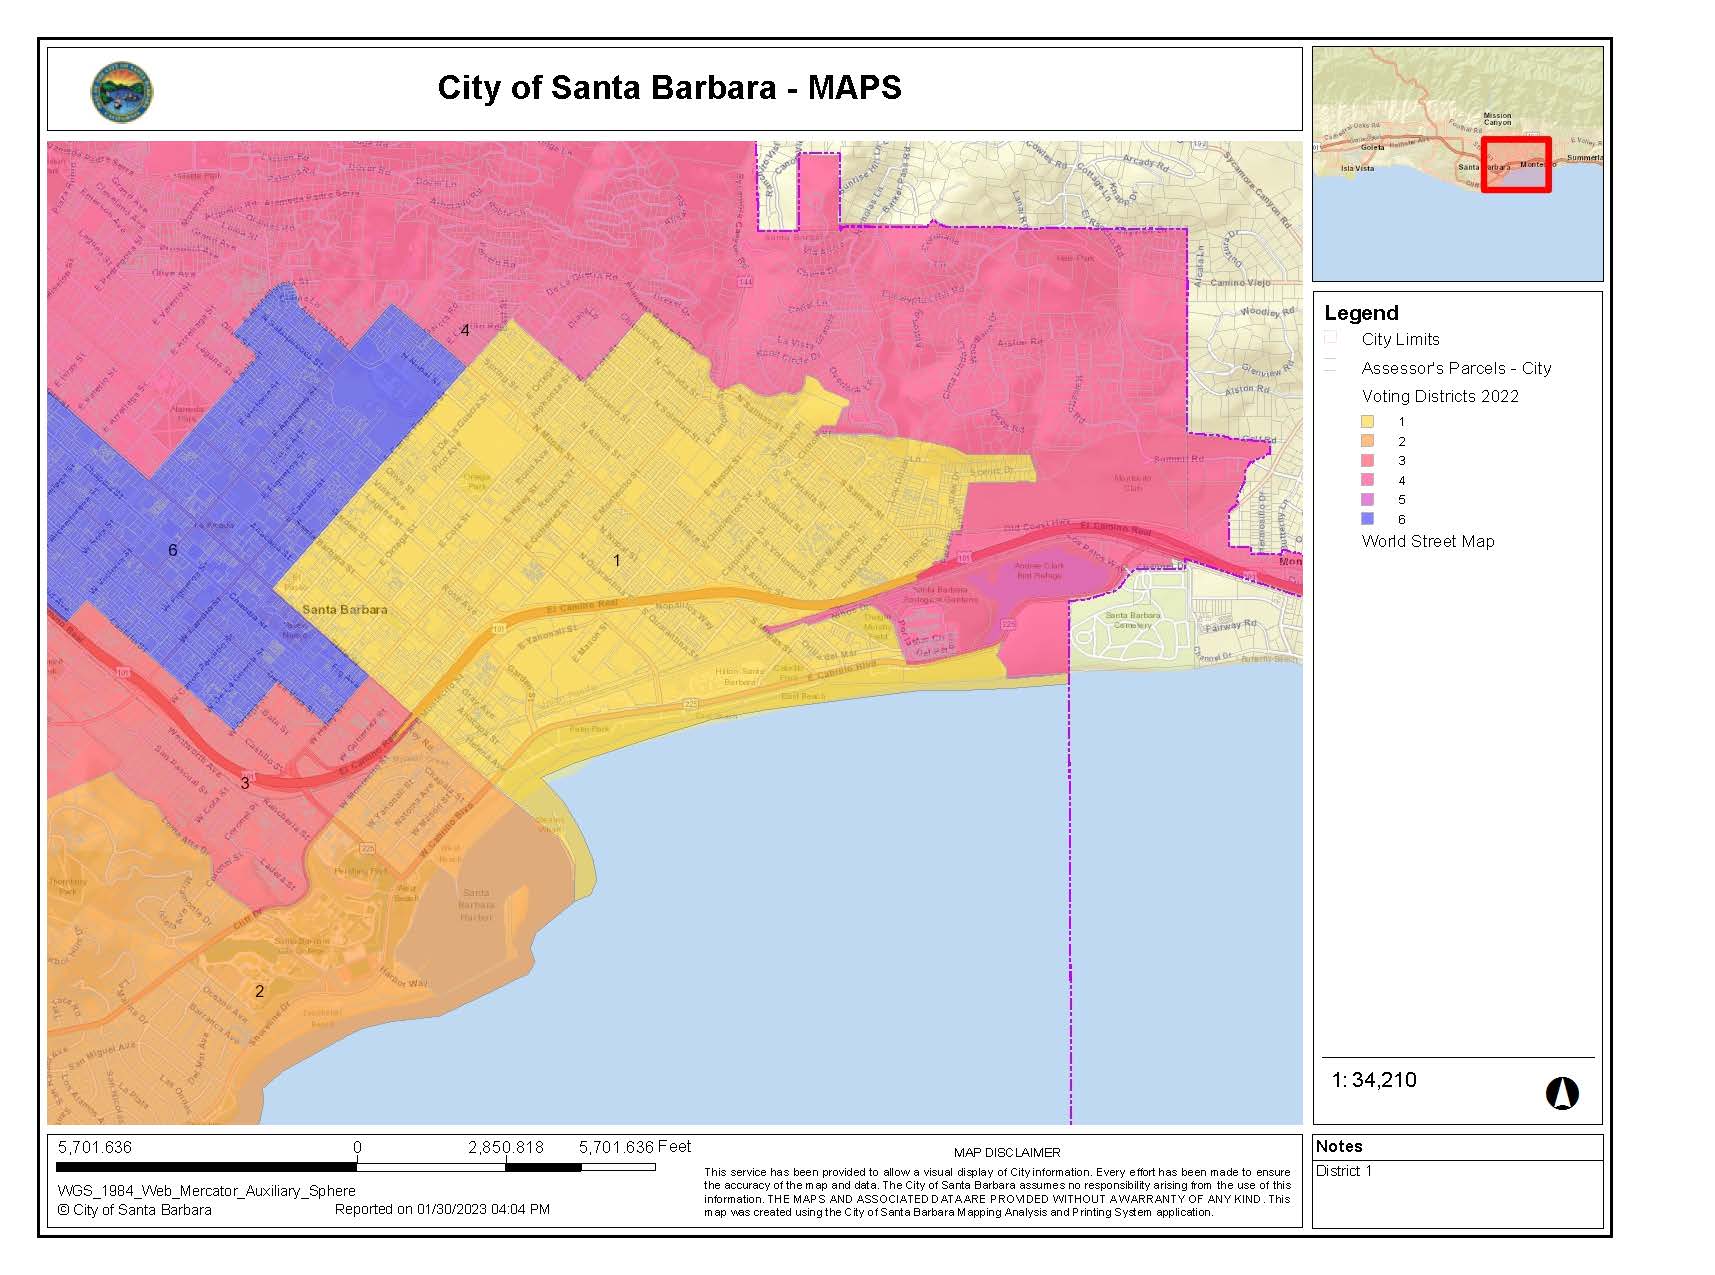 Elections City of Santa Barbara